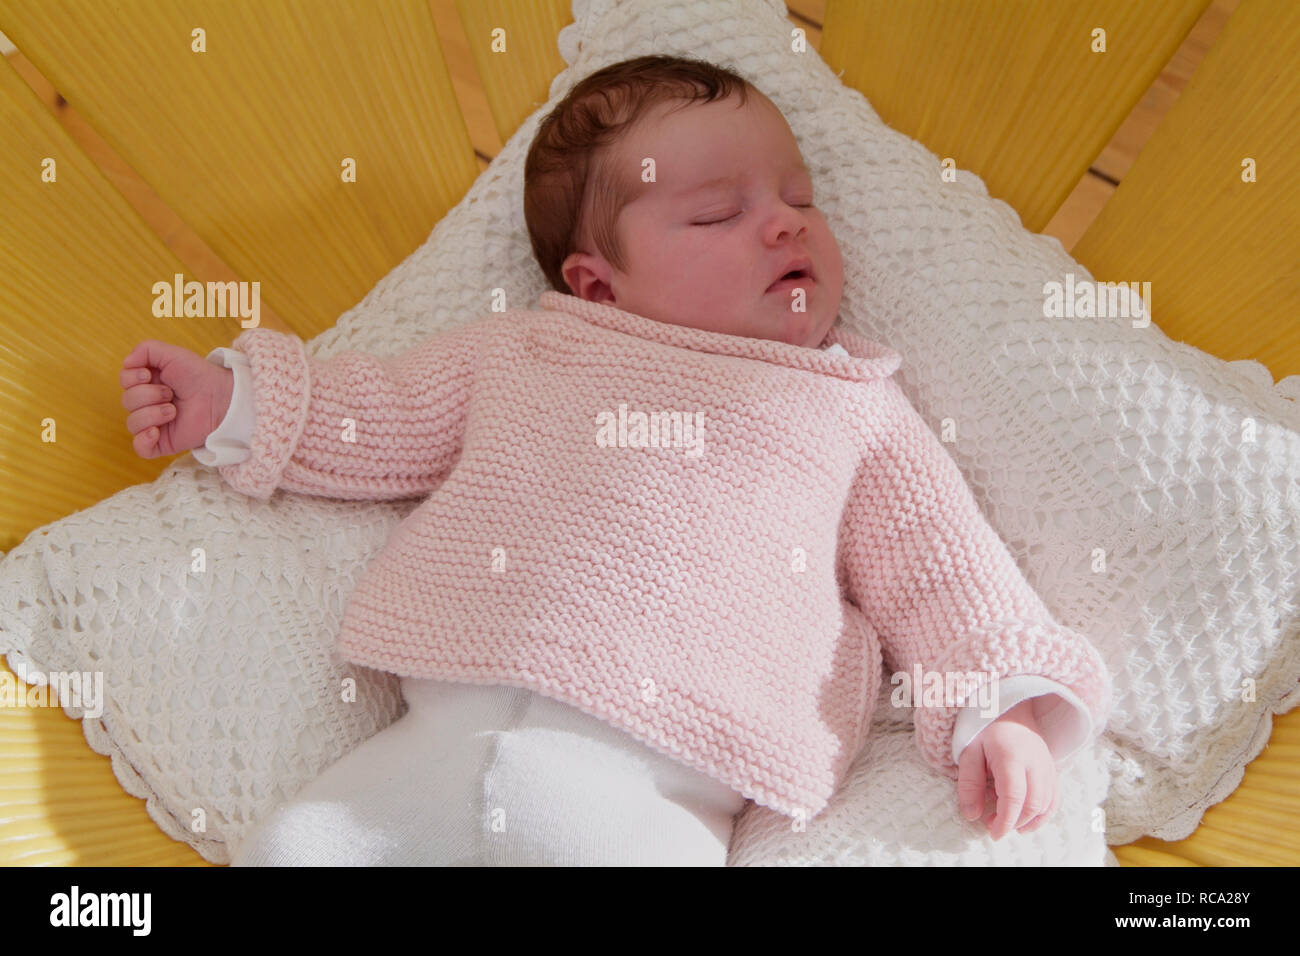 Bebé neugeborenes liegt auf einem Kissen, tipo das ist 12 Tage alt | bebé recién nacido acostado sobre una almohada - el bebé ist 12 días de edad. Foto de stock